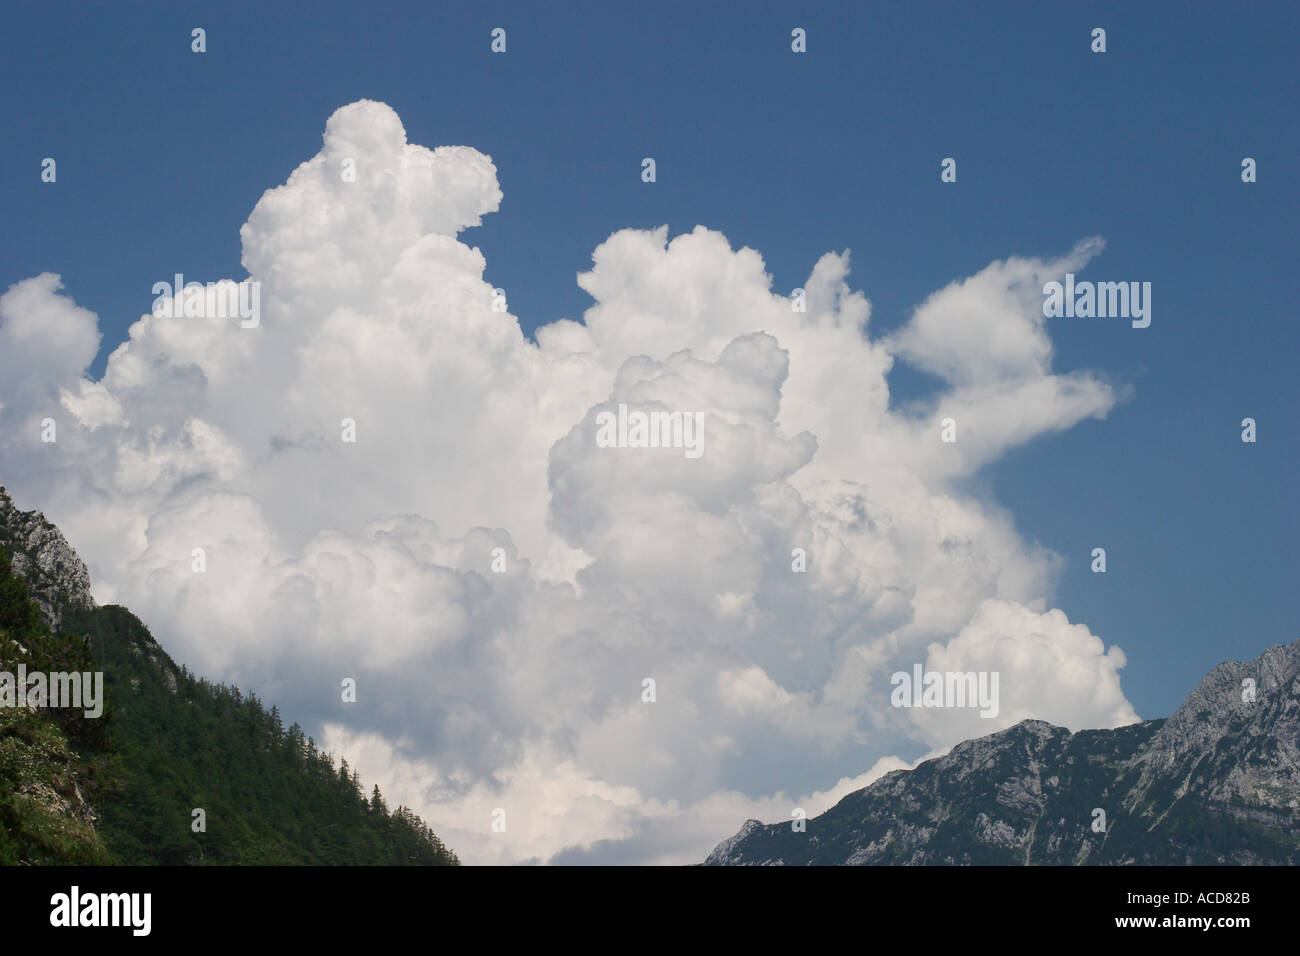 Gewitterwolken in Steiner Alpen in Oberkrain Slowenien Slovenia Stock Photo